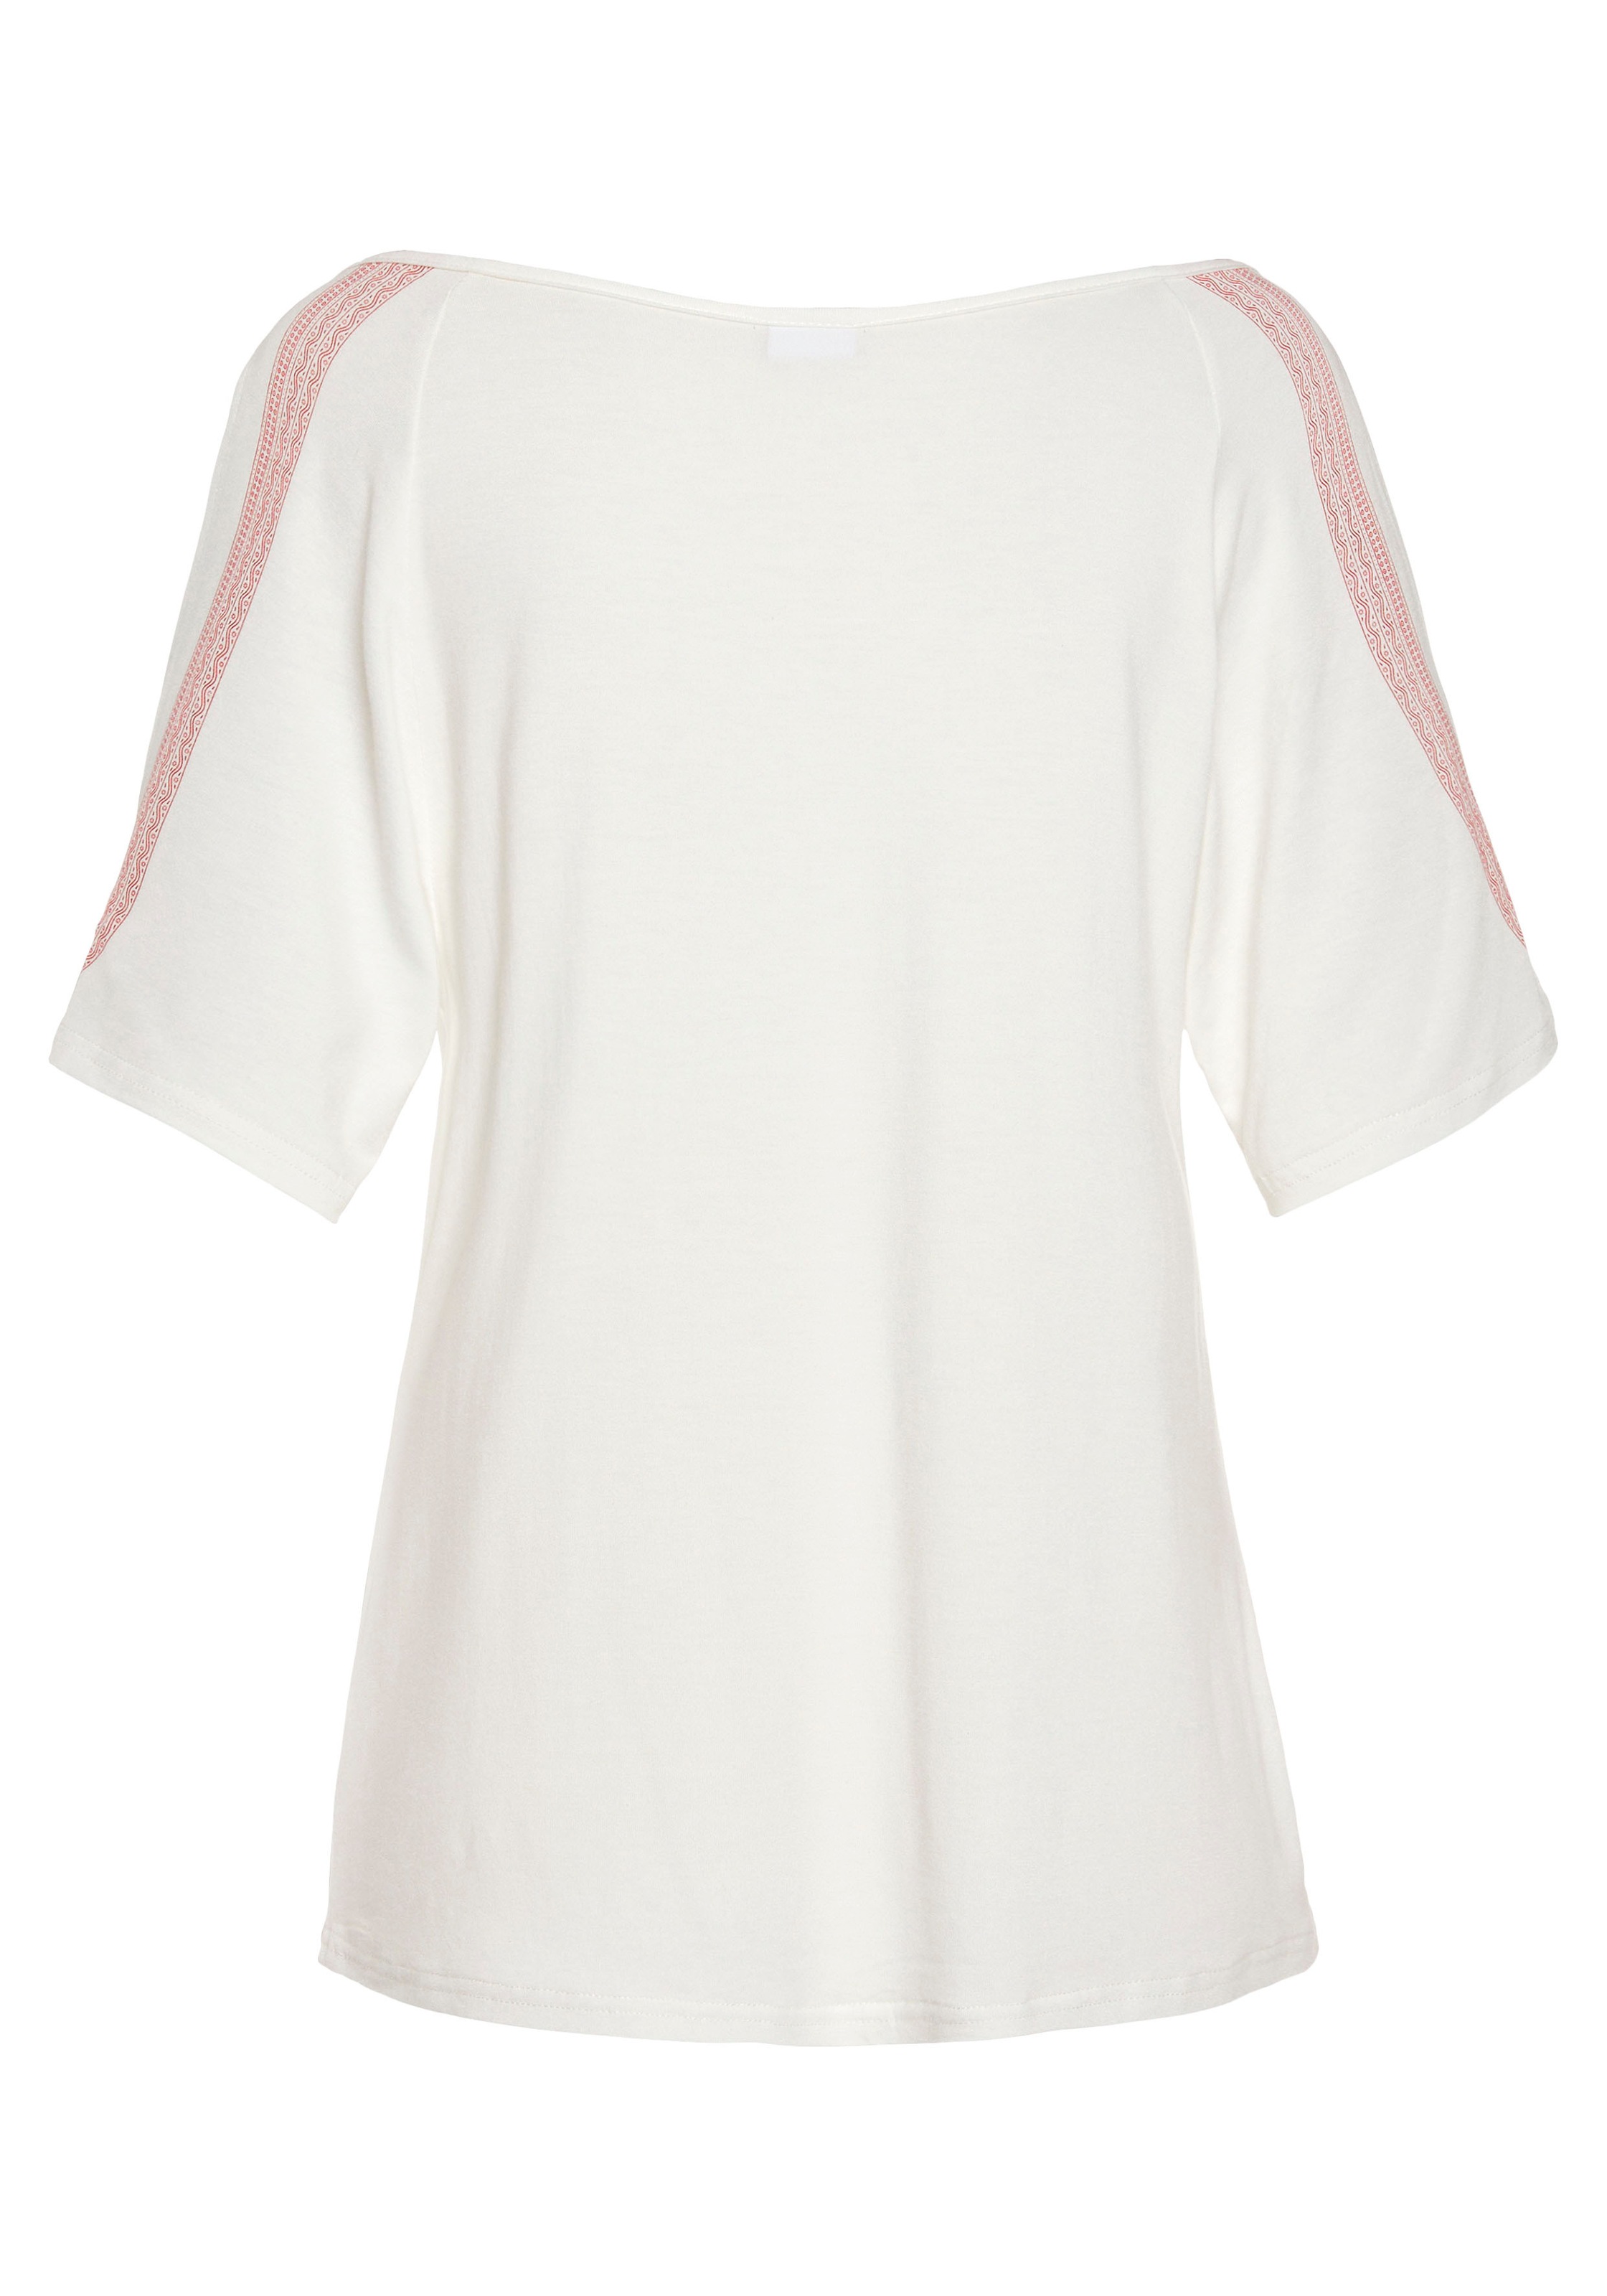 LASCANA Kurzarmshirt, mit platziertem Druck und Bindeband, Blusenshirt, locker-luftig